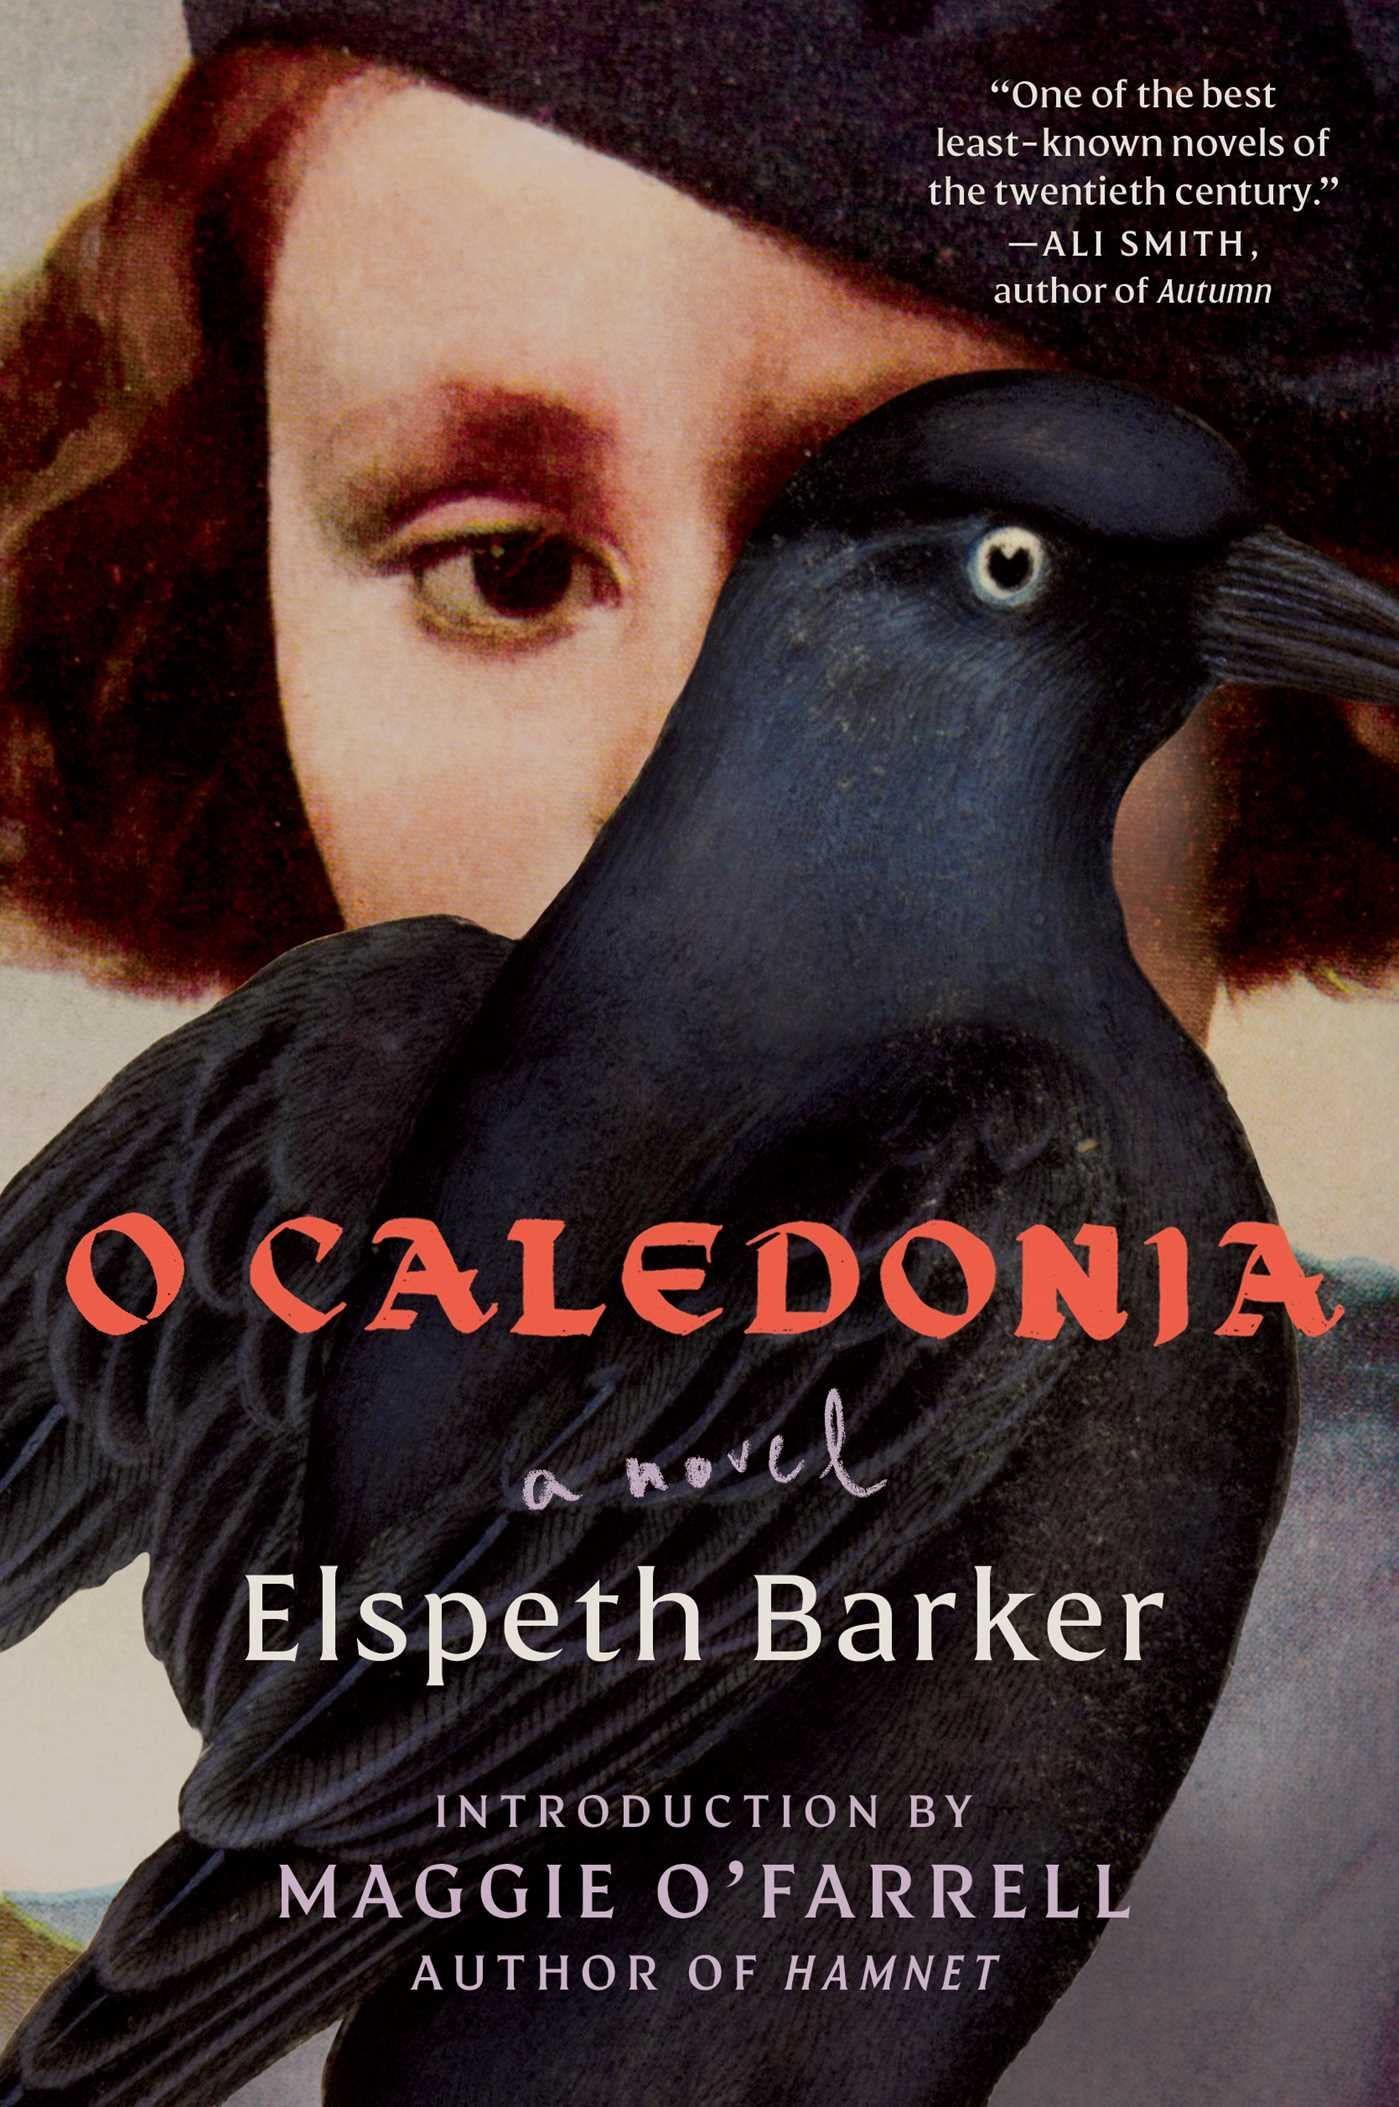 Noir for the Anthropocene: On Elspeth Barker’s “O Caledonia”